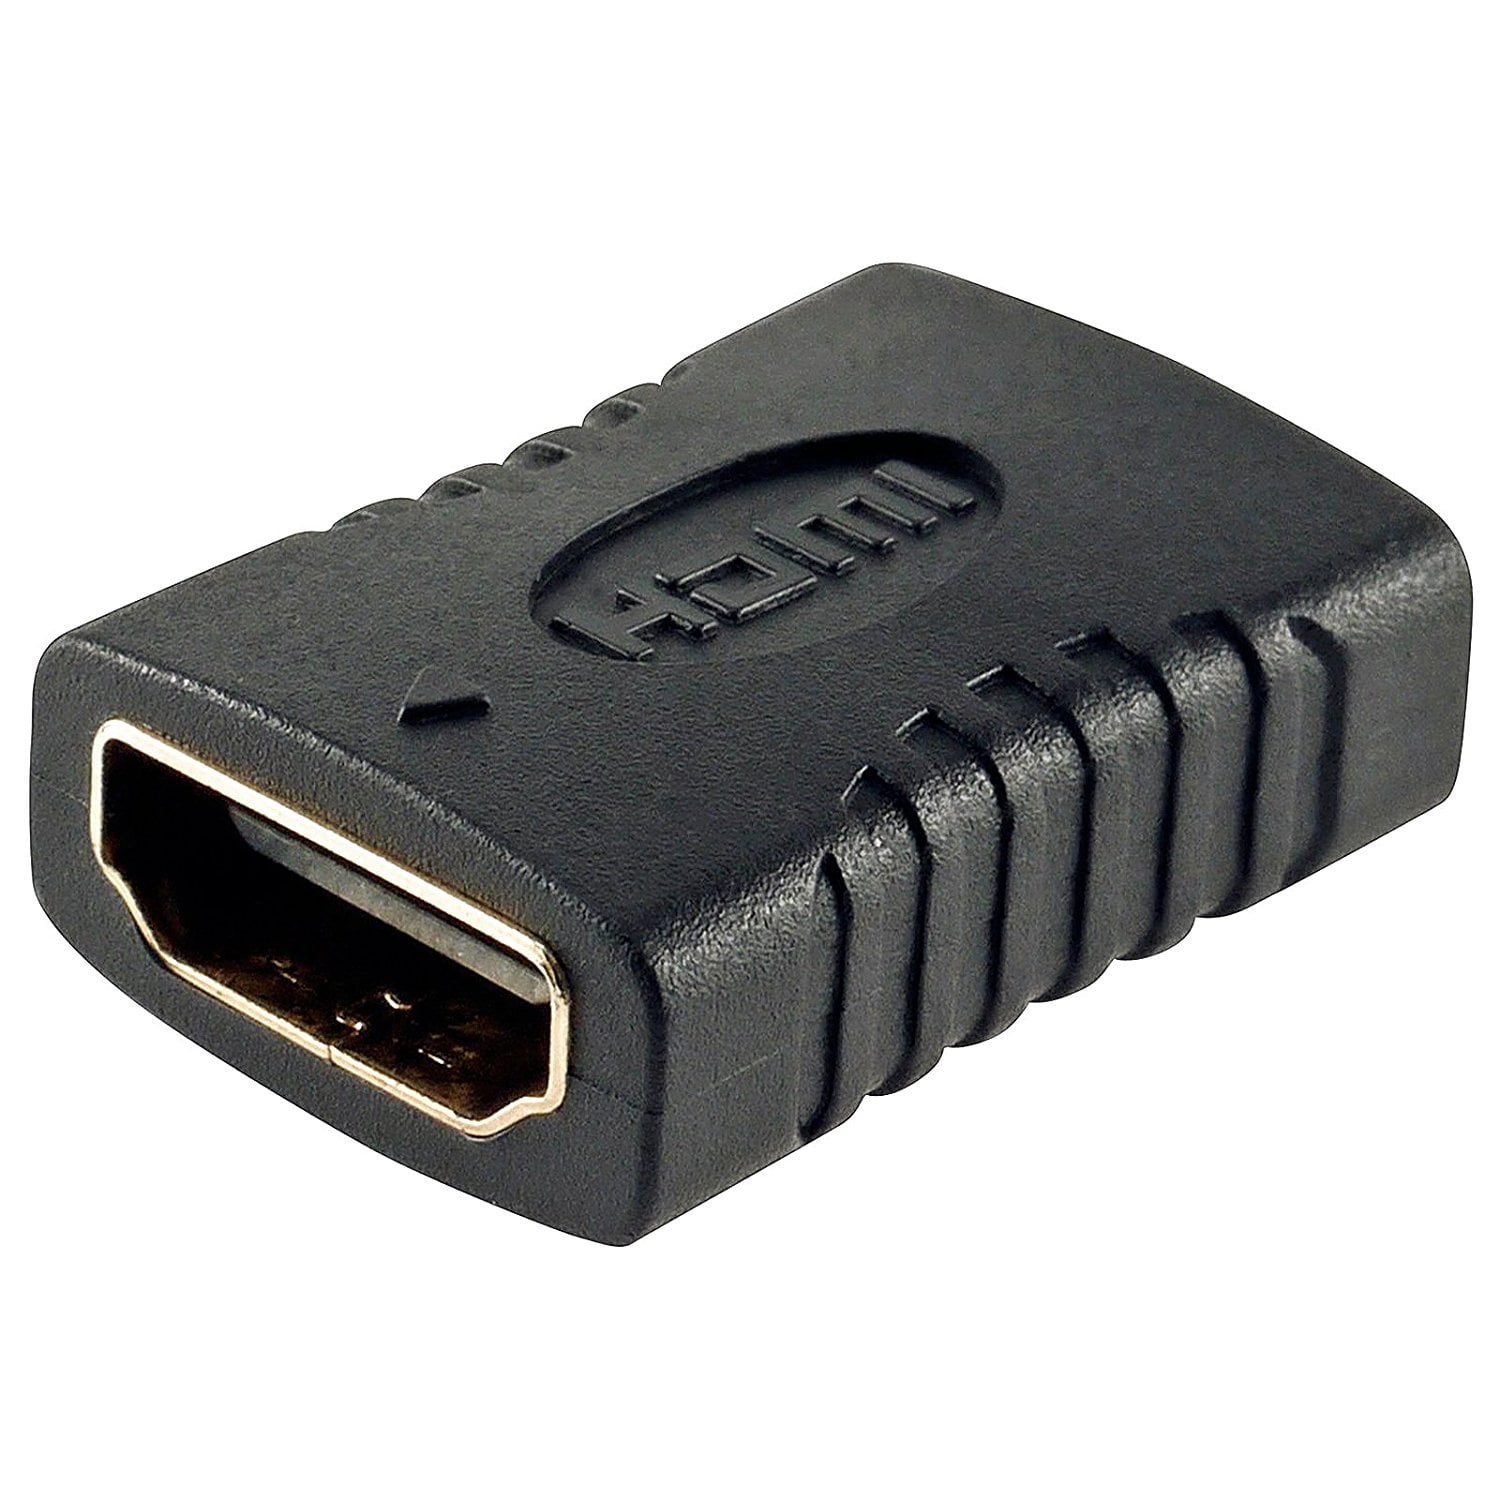 Переходник для hdmi кабеля. Переходник HDMI (F) -> HDMI (F) VCOM <ca313>. Переходник HDMI F HDMI F прямой VCOM. HDMI переходник 1 female x 2 female. Переходник HDMI 2 В 1.